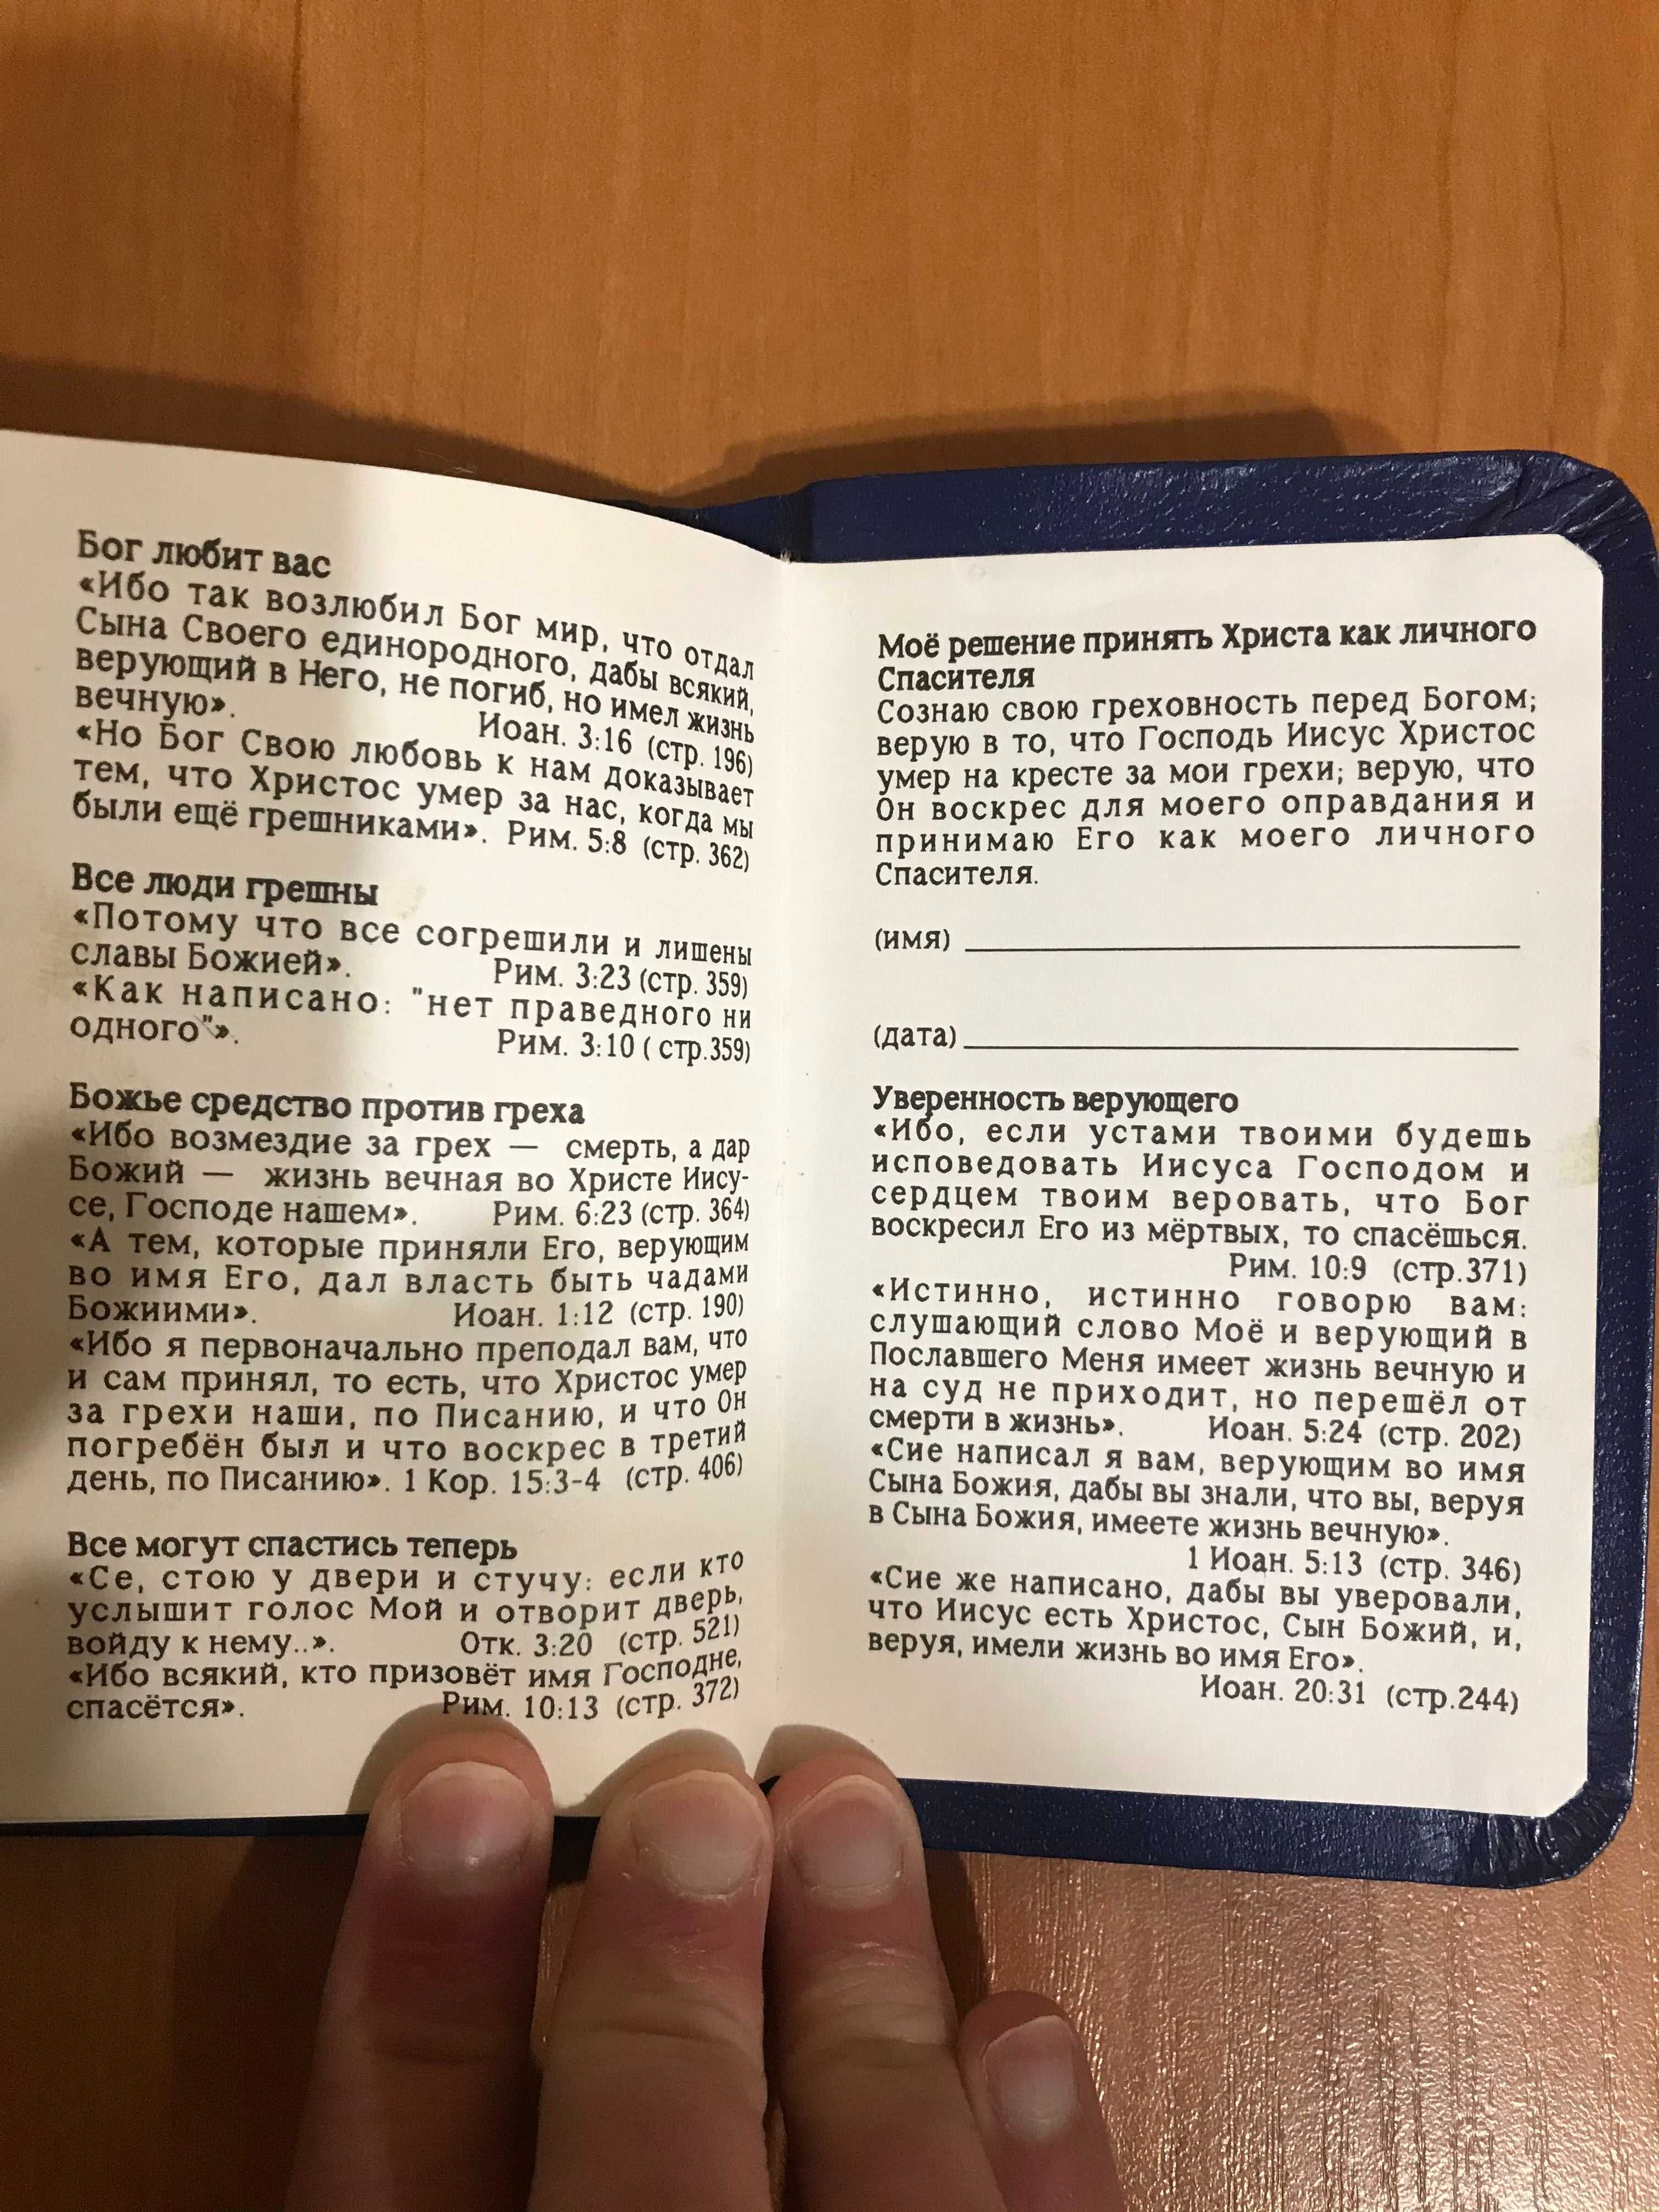 Новый завет и псалтирь в миниатюре / псалтырь / карманная библия